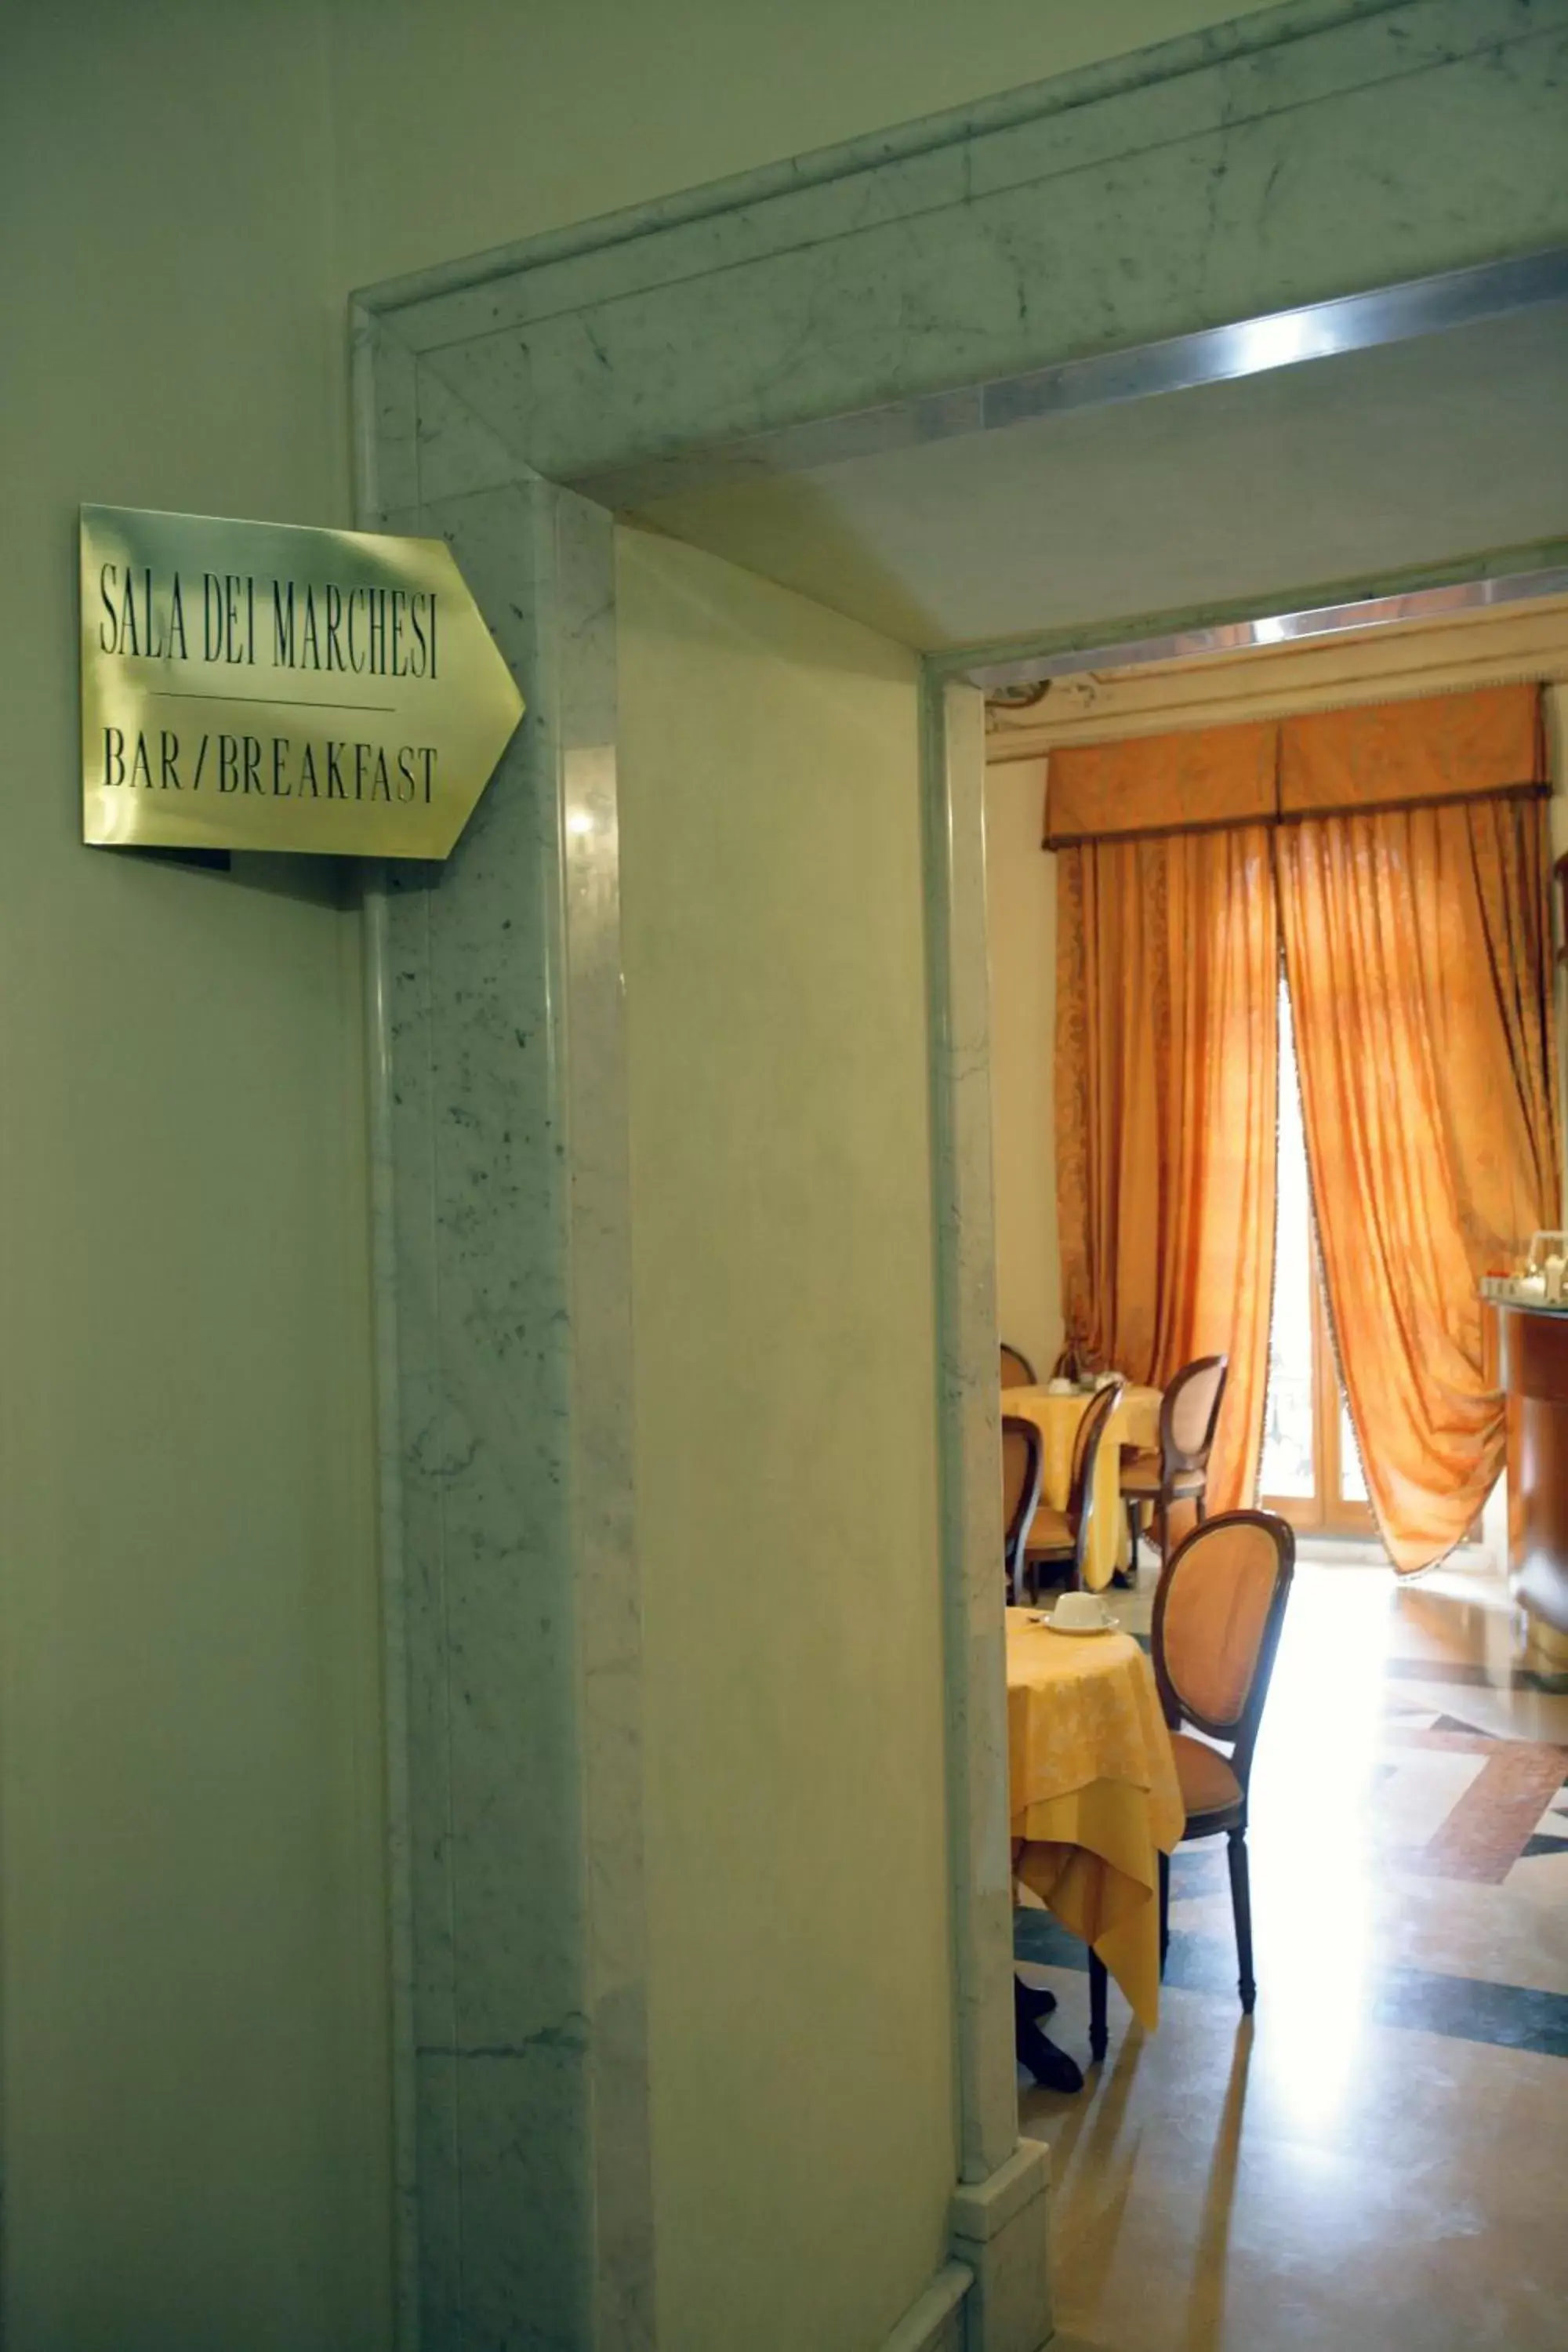 Decorative detail in Domus Florentiae Hotel